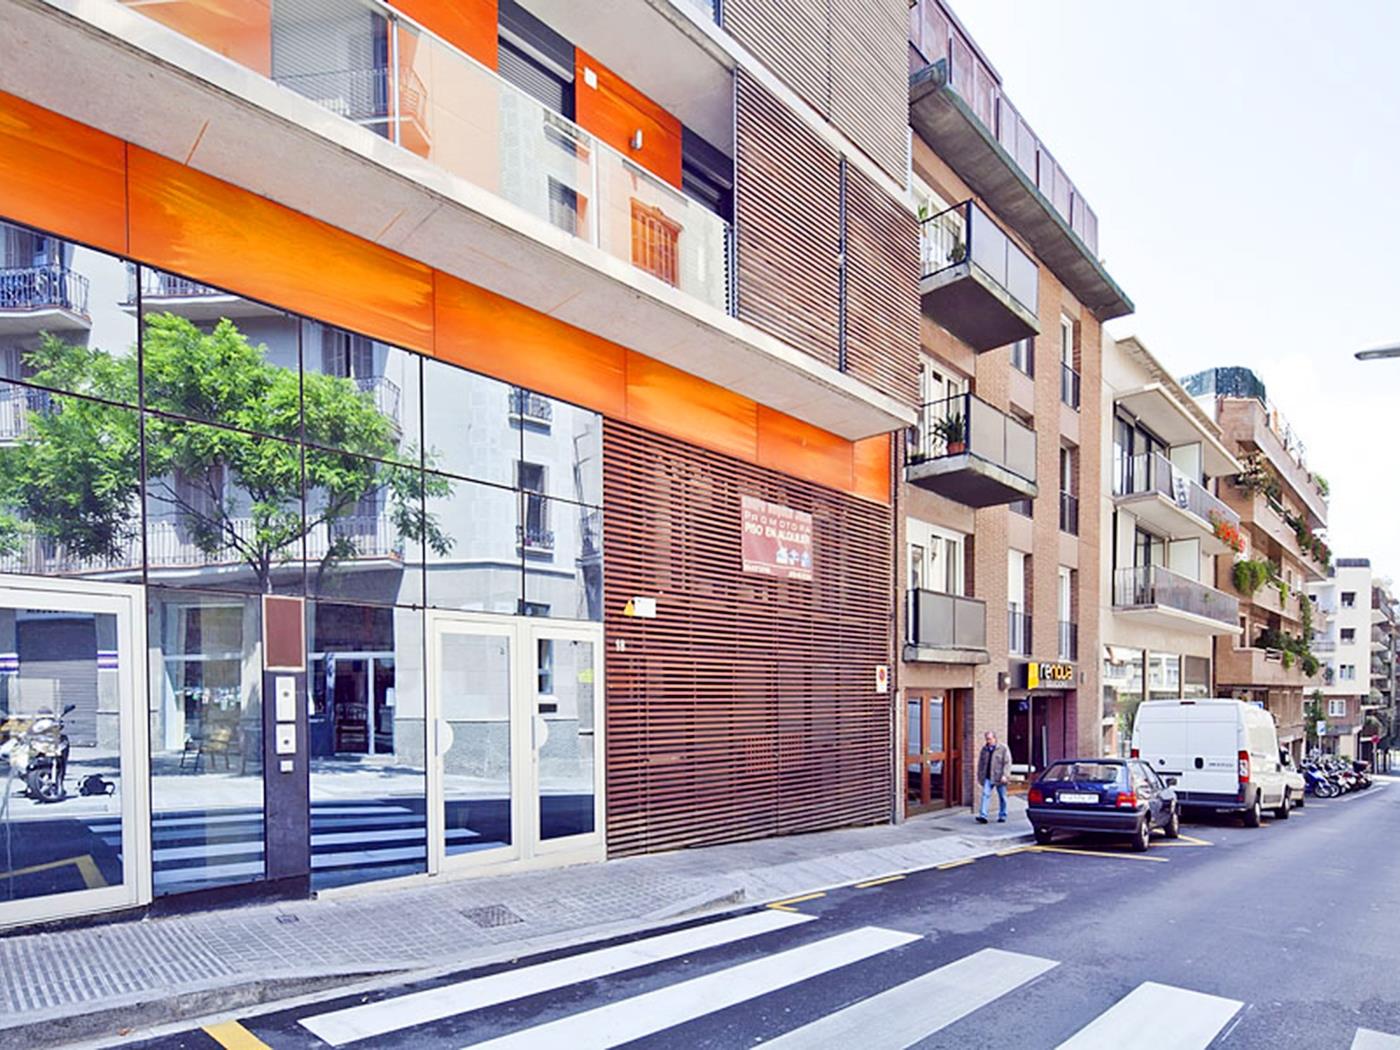 Corporate Executive Wohnungen in Barcelona - My Space barcelona Appartementen